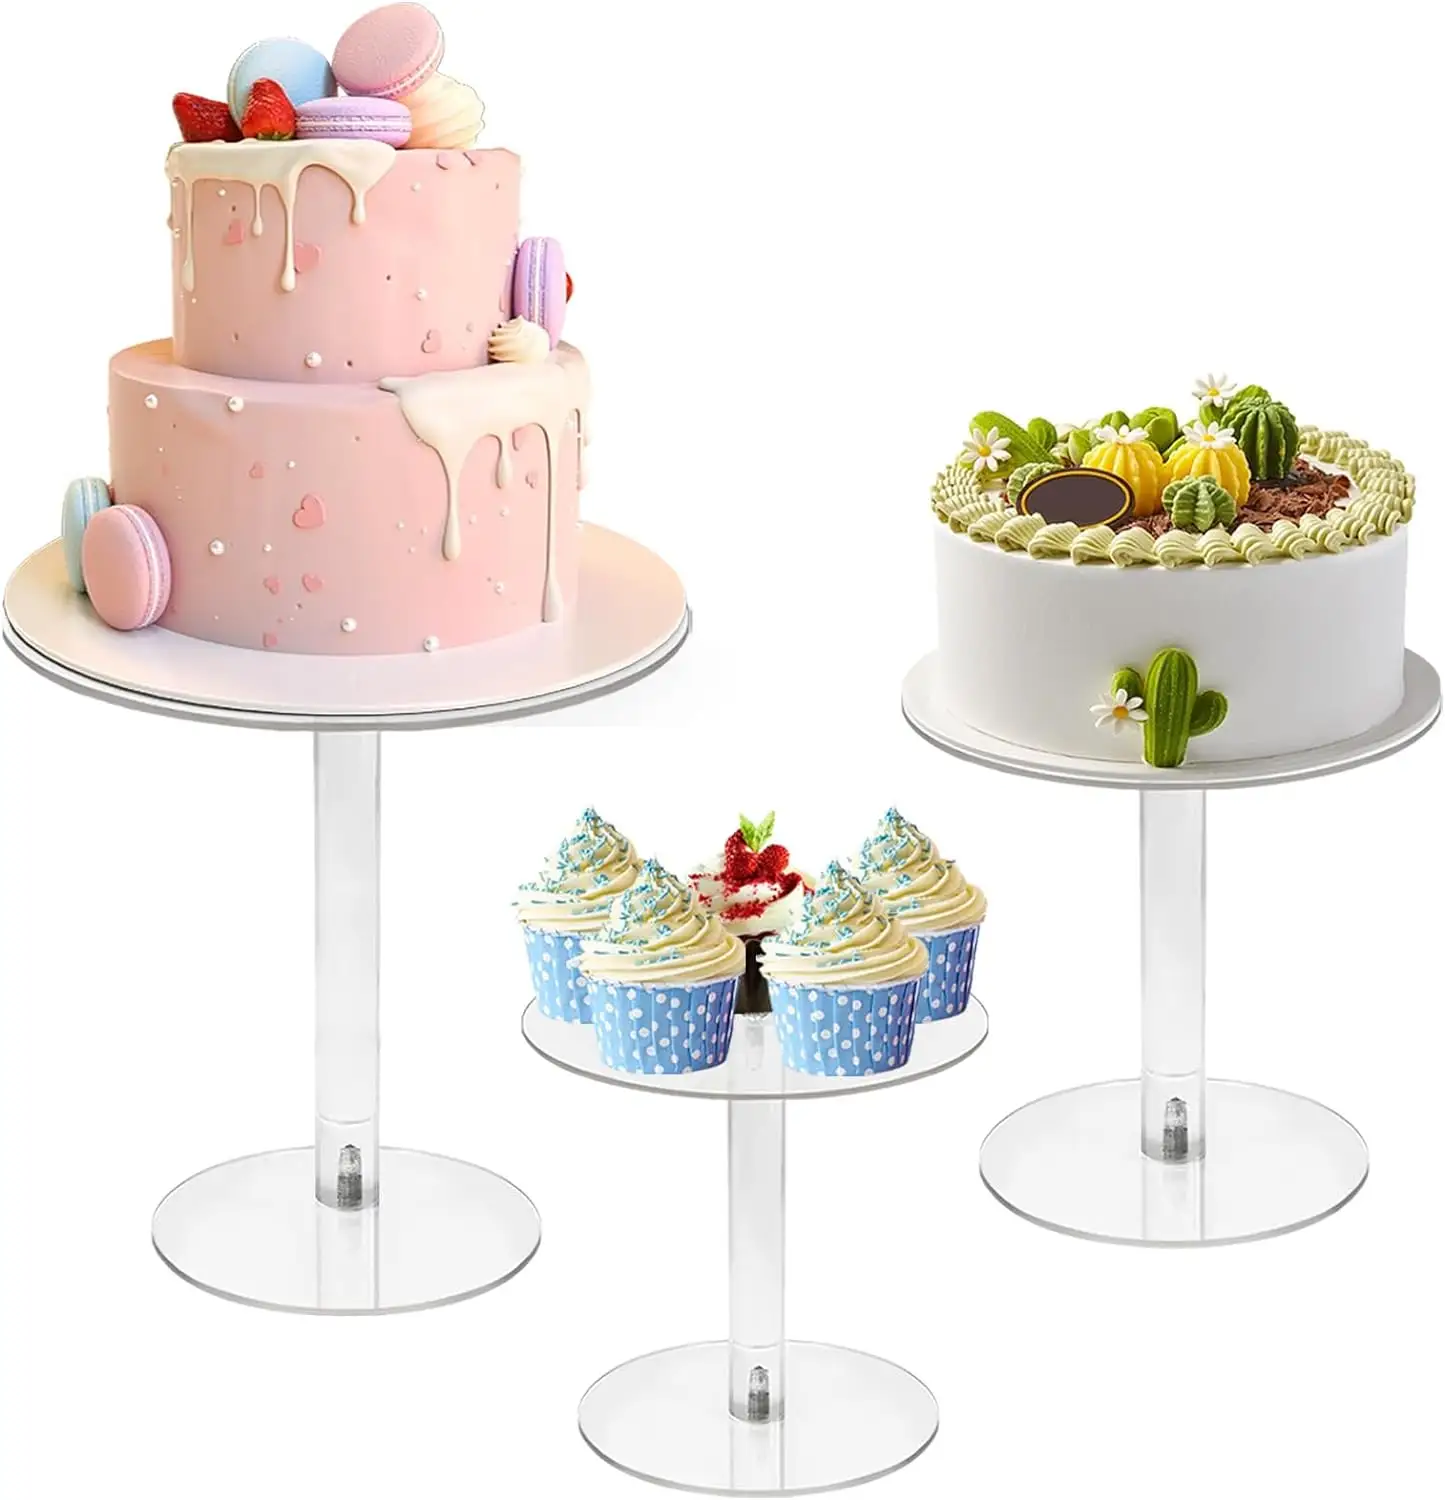 3 gói Acrylic rõ ràng bánh đứng thiết lập cho món tráng miệng Bảng trang trí đám cưới cho cupcake Pastry kẹo hiển thị sinh nhật đảng tổ chức sự kiện